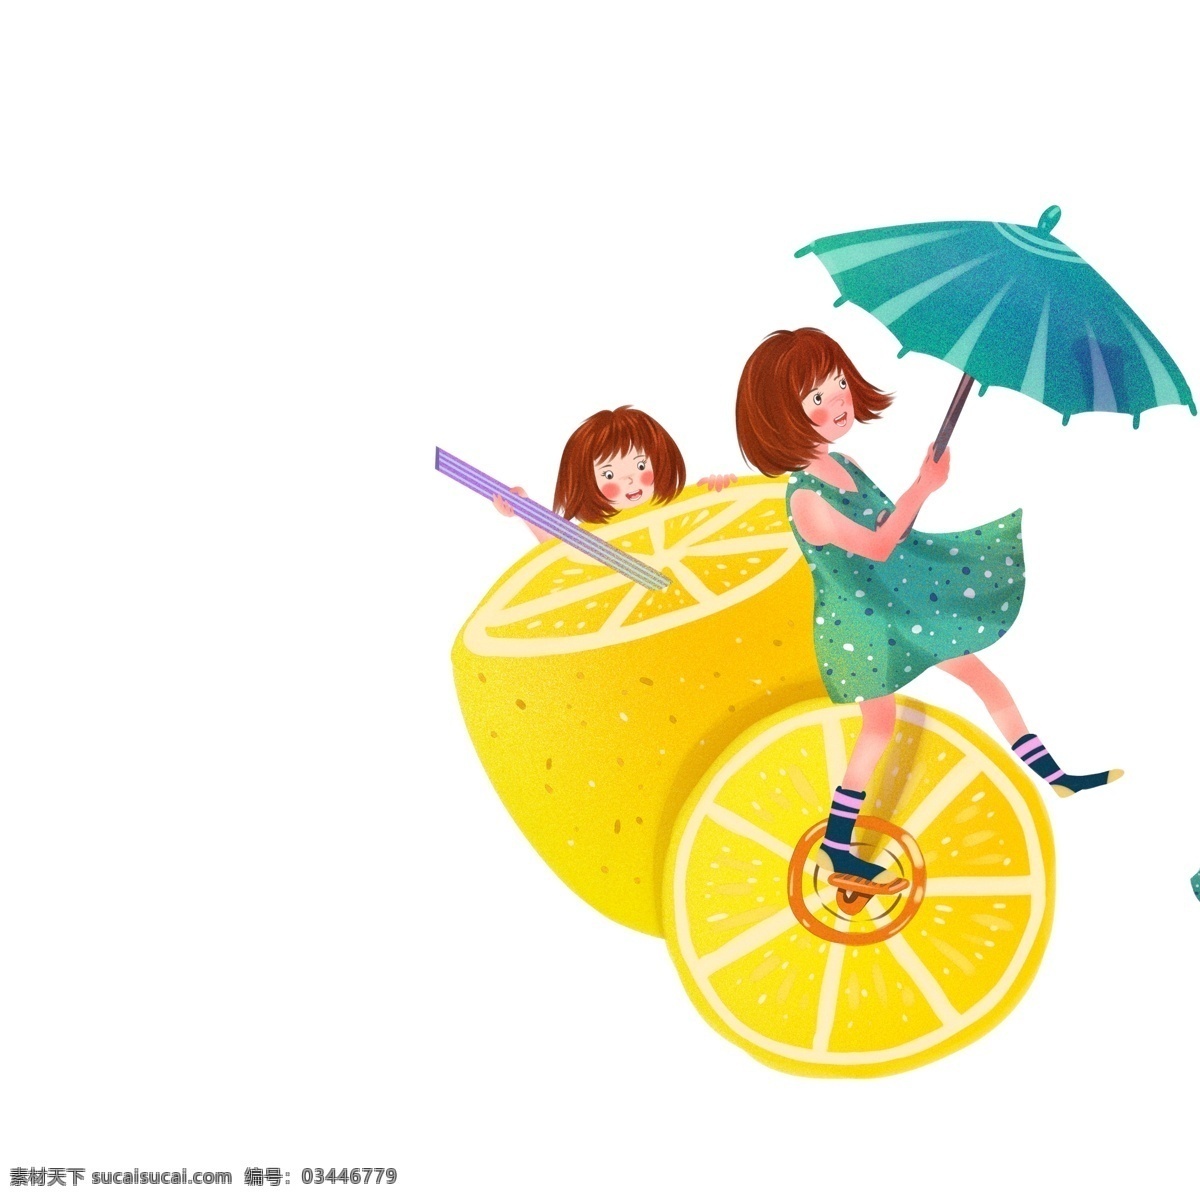 创意 卡通 饮料 女孩 图案 元素 雨伞 设计元素 简约 水果 手绘 元素设计 创意元素